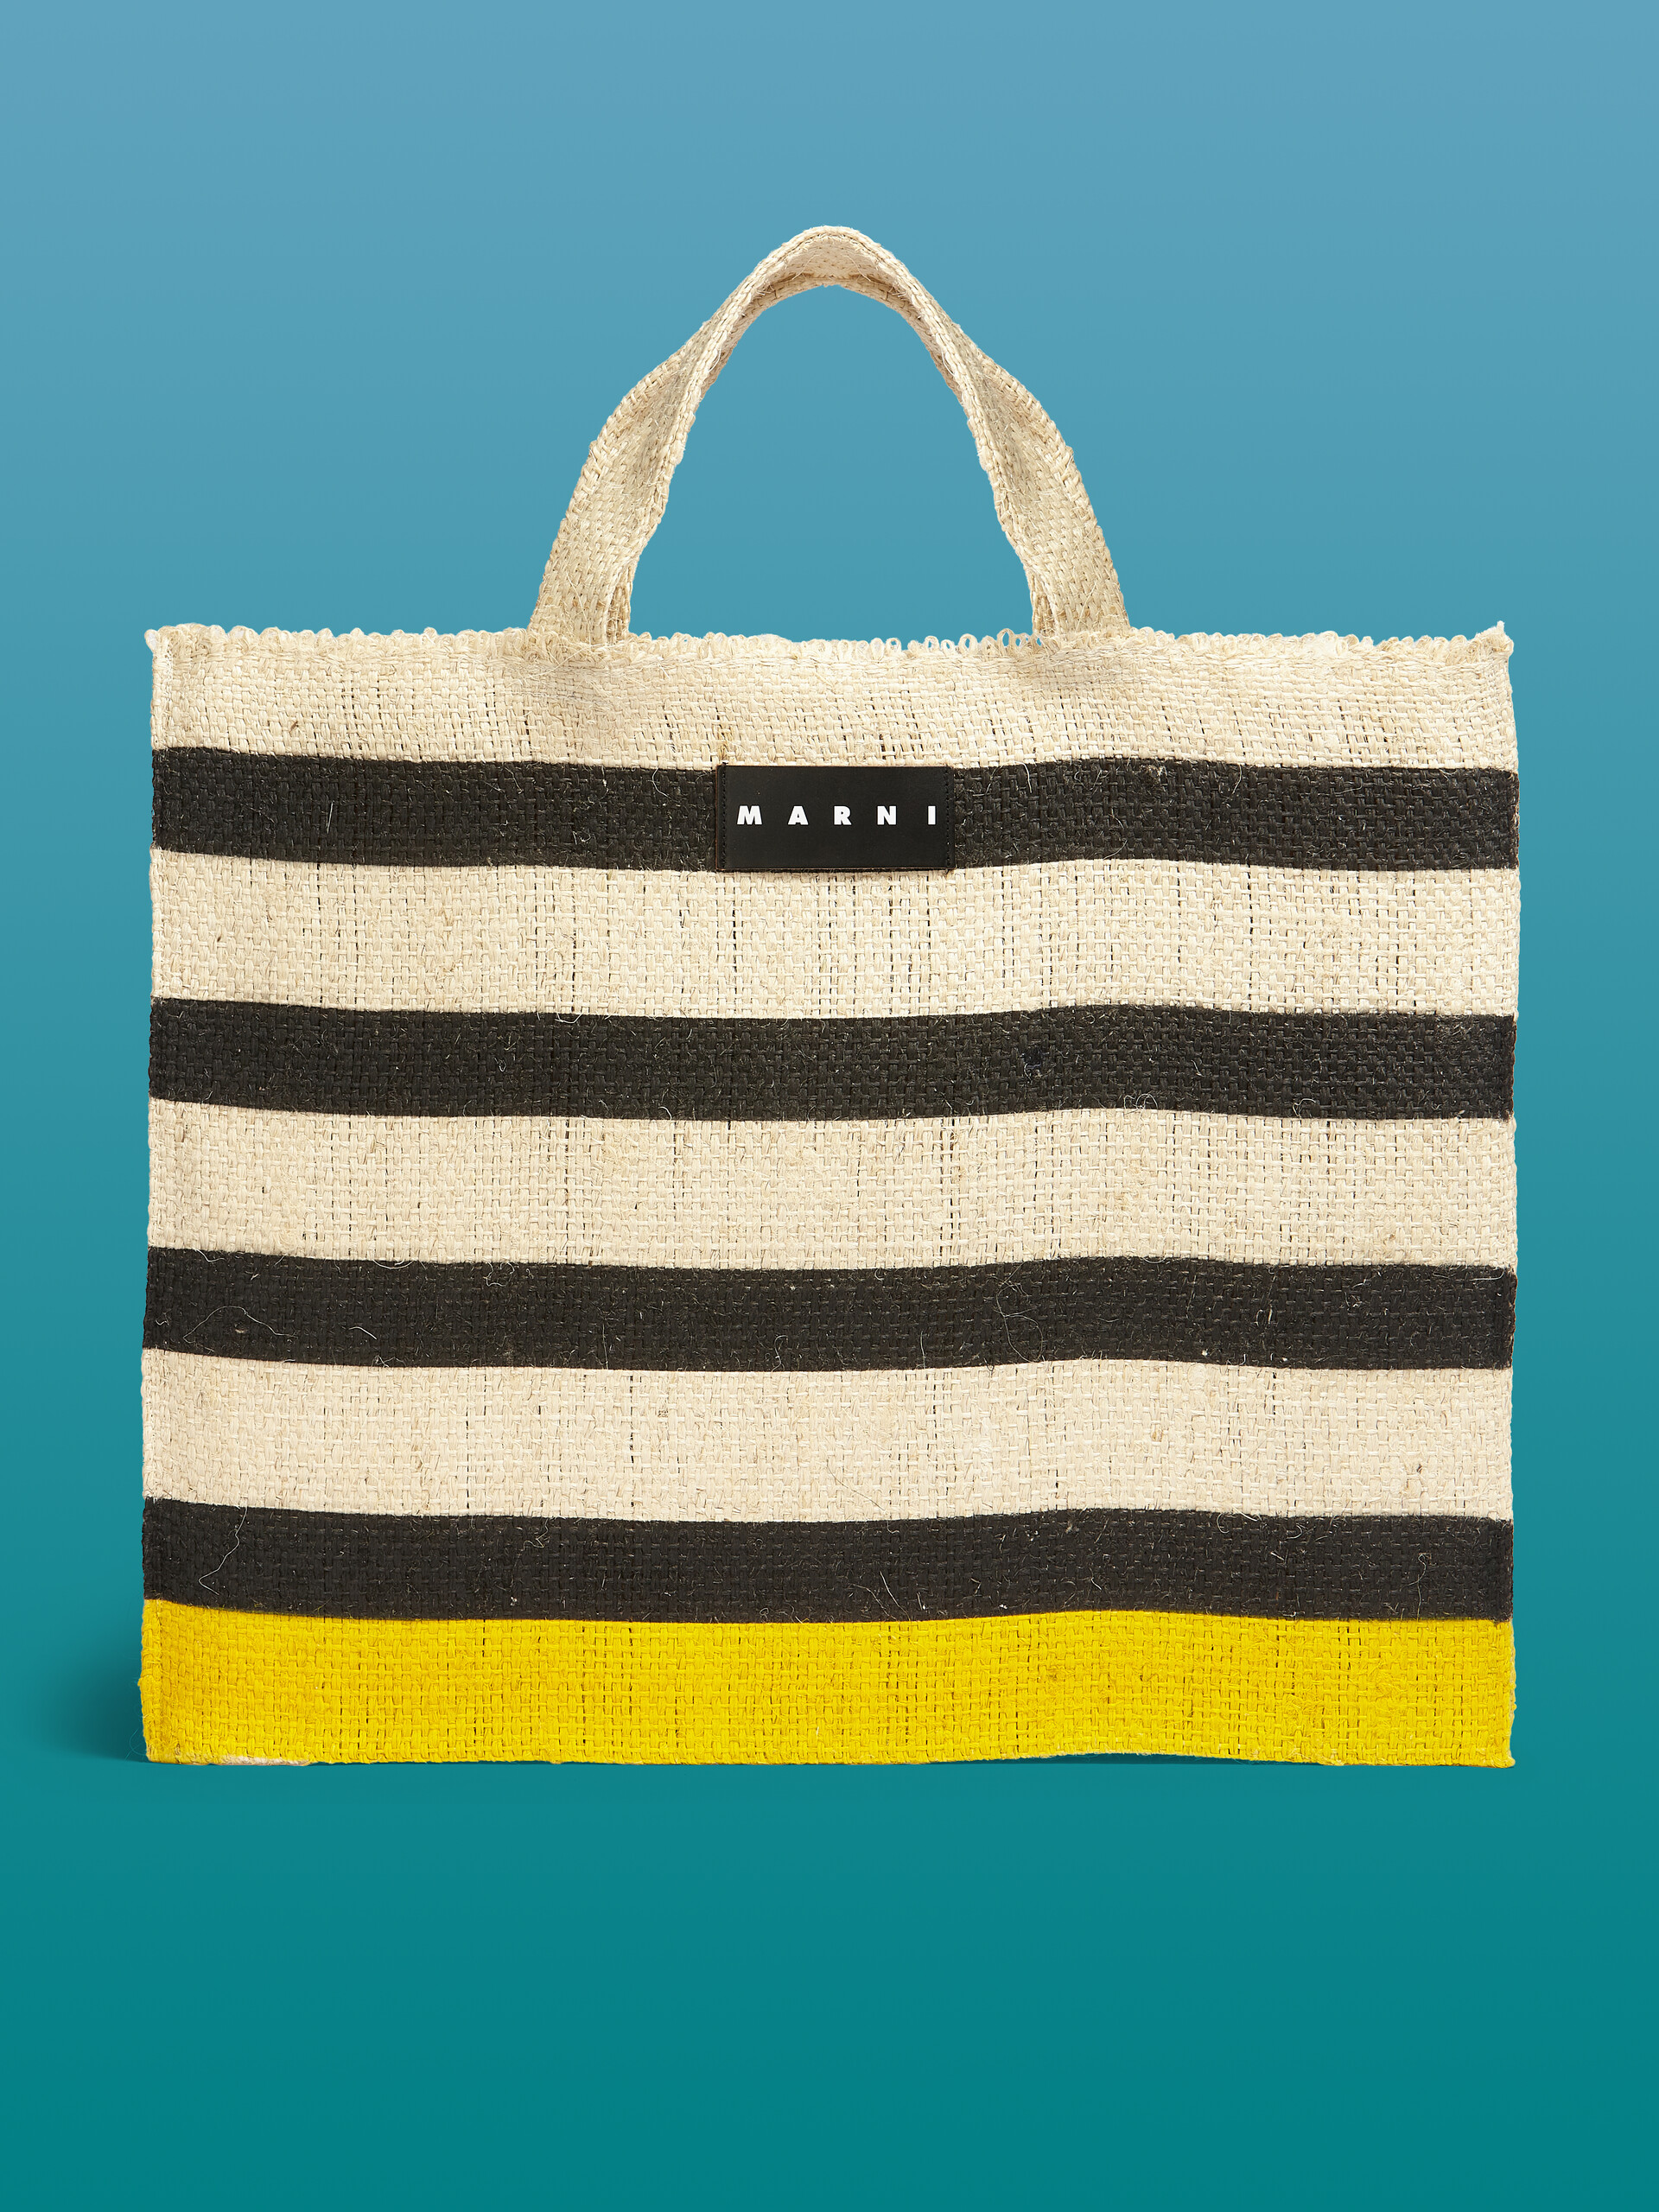 MARNI MARKET CANAPA large bag in black and yellow natural fiber - Shopping Bags - Image 1